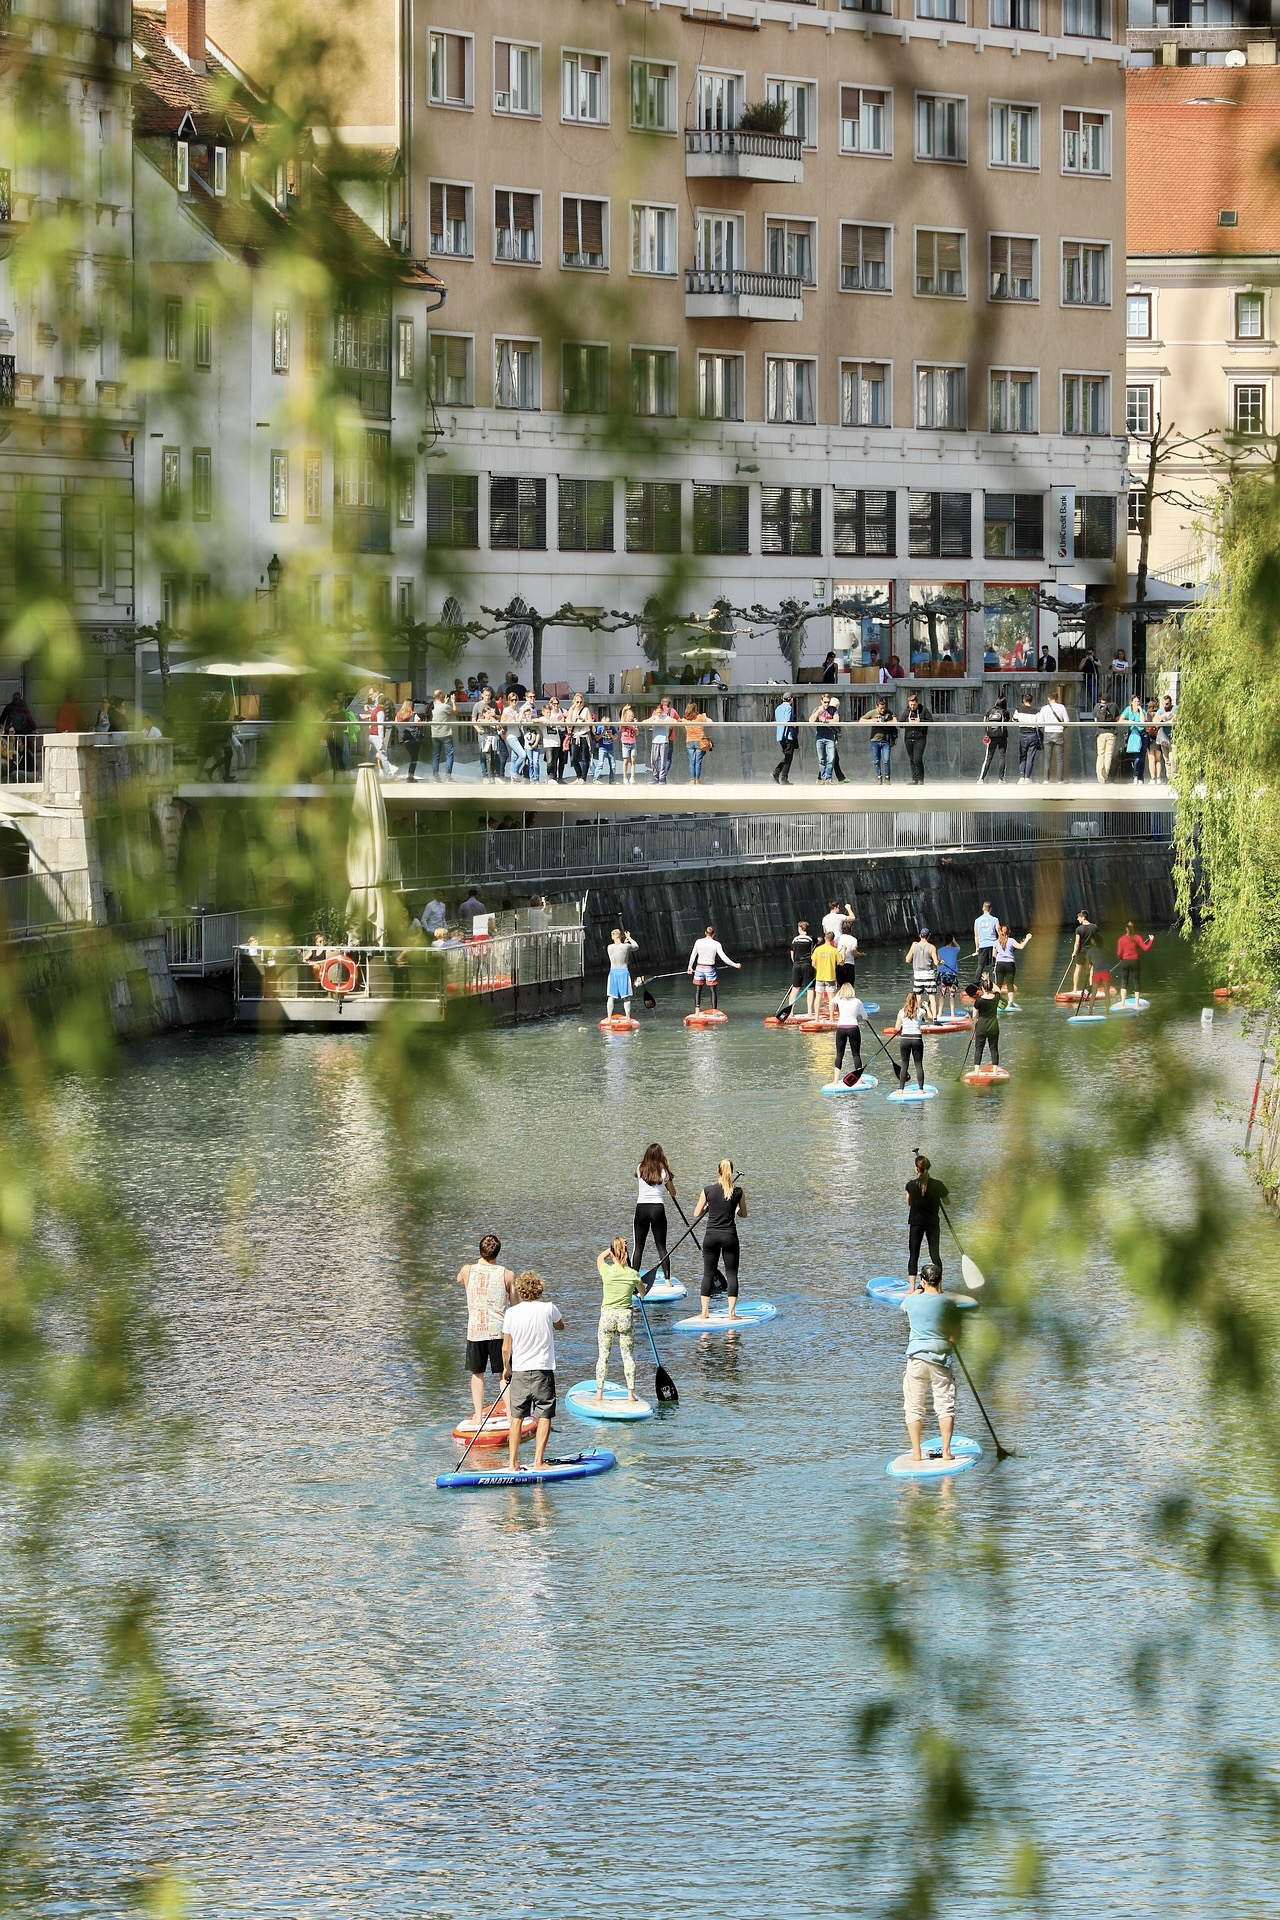 Der Fluss in Ljubljana ist ein schönes Reiseziel für einen Städtetrip in Europa